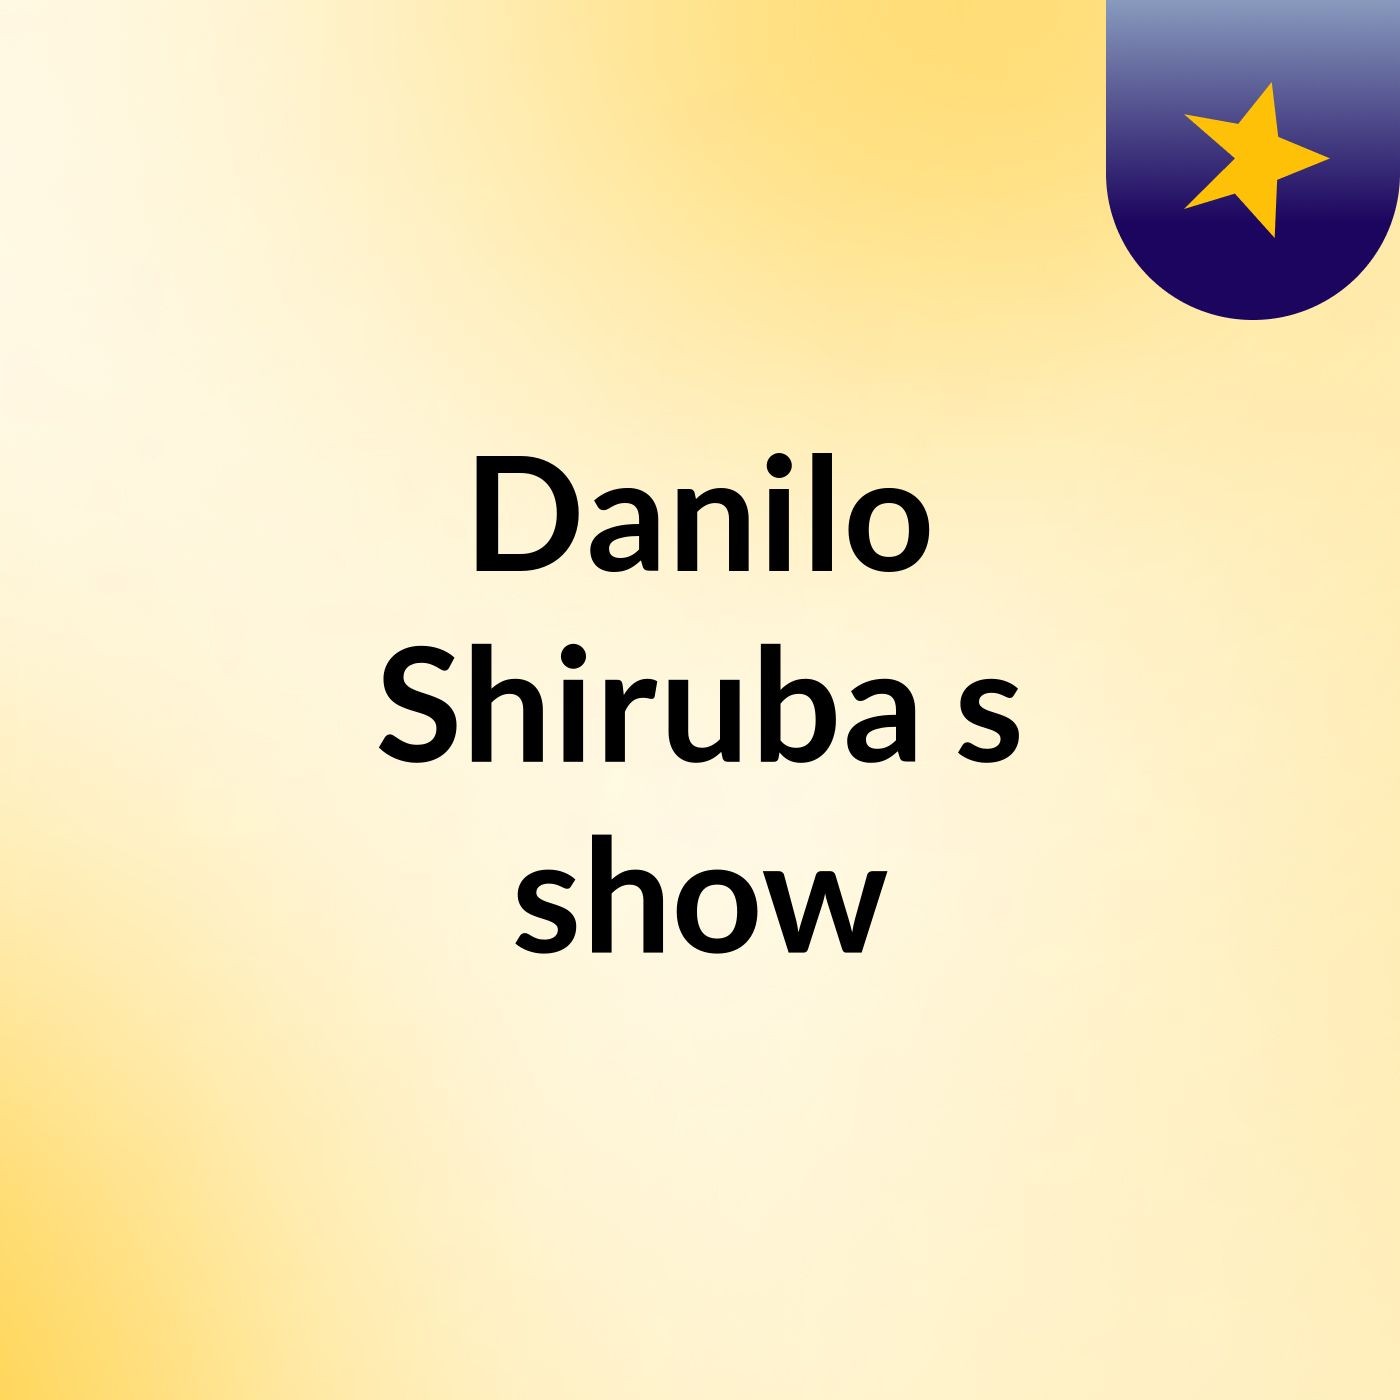 Danilo Shiruba's show